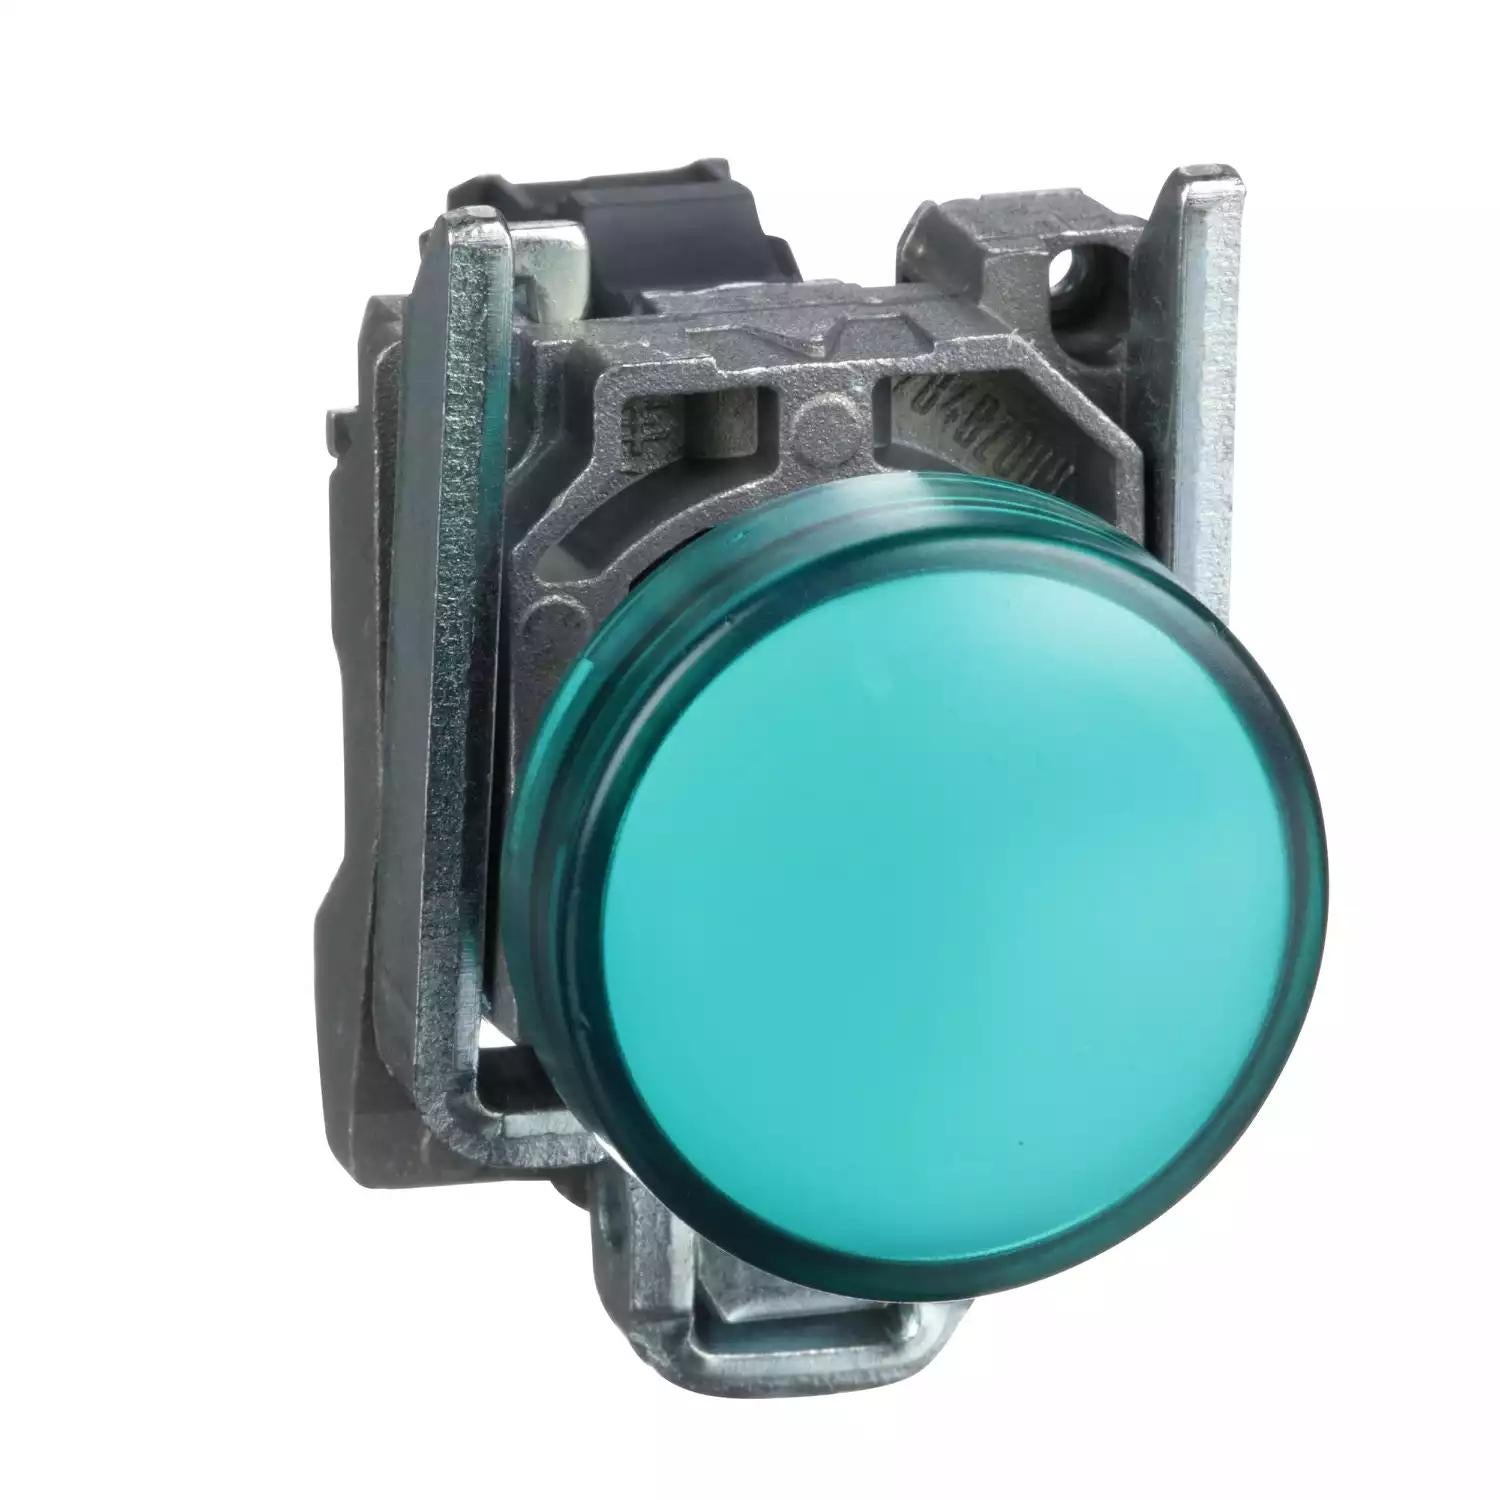 Harmony XB4, Pilot light, metal, green, Ø22, plain lens with integral LED, 110…120 VAC